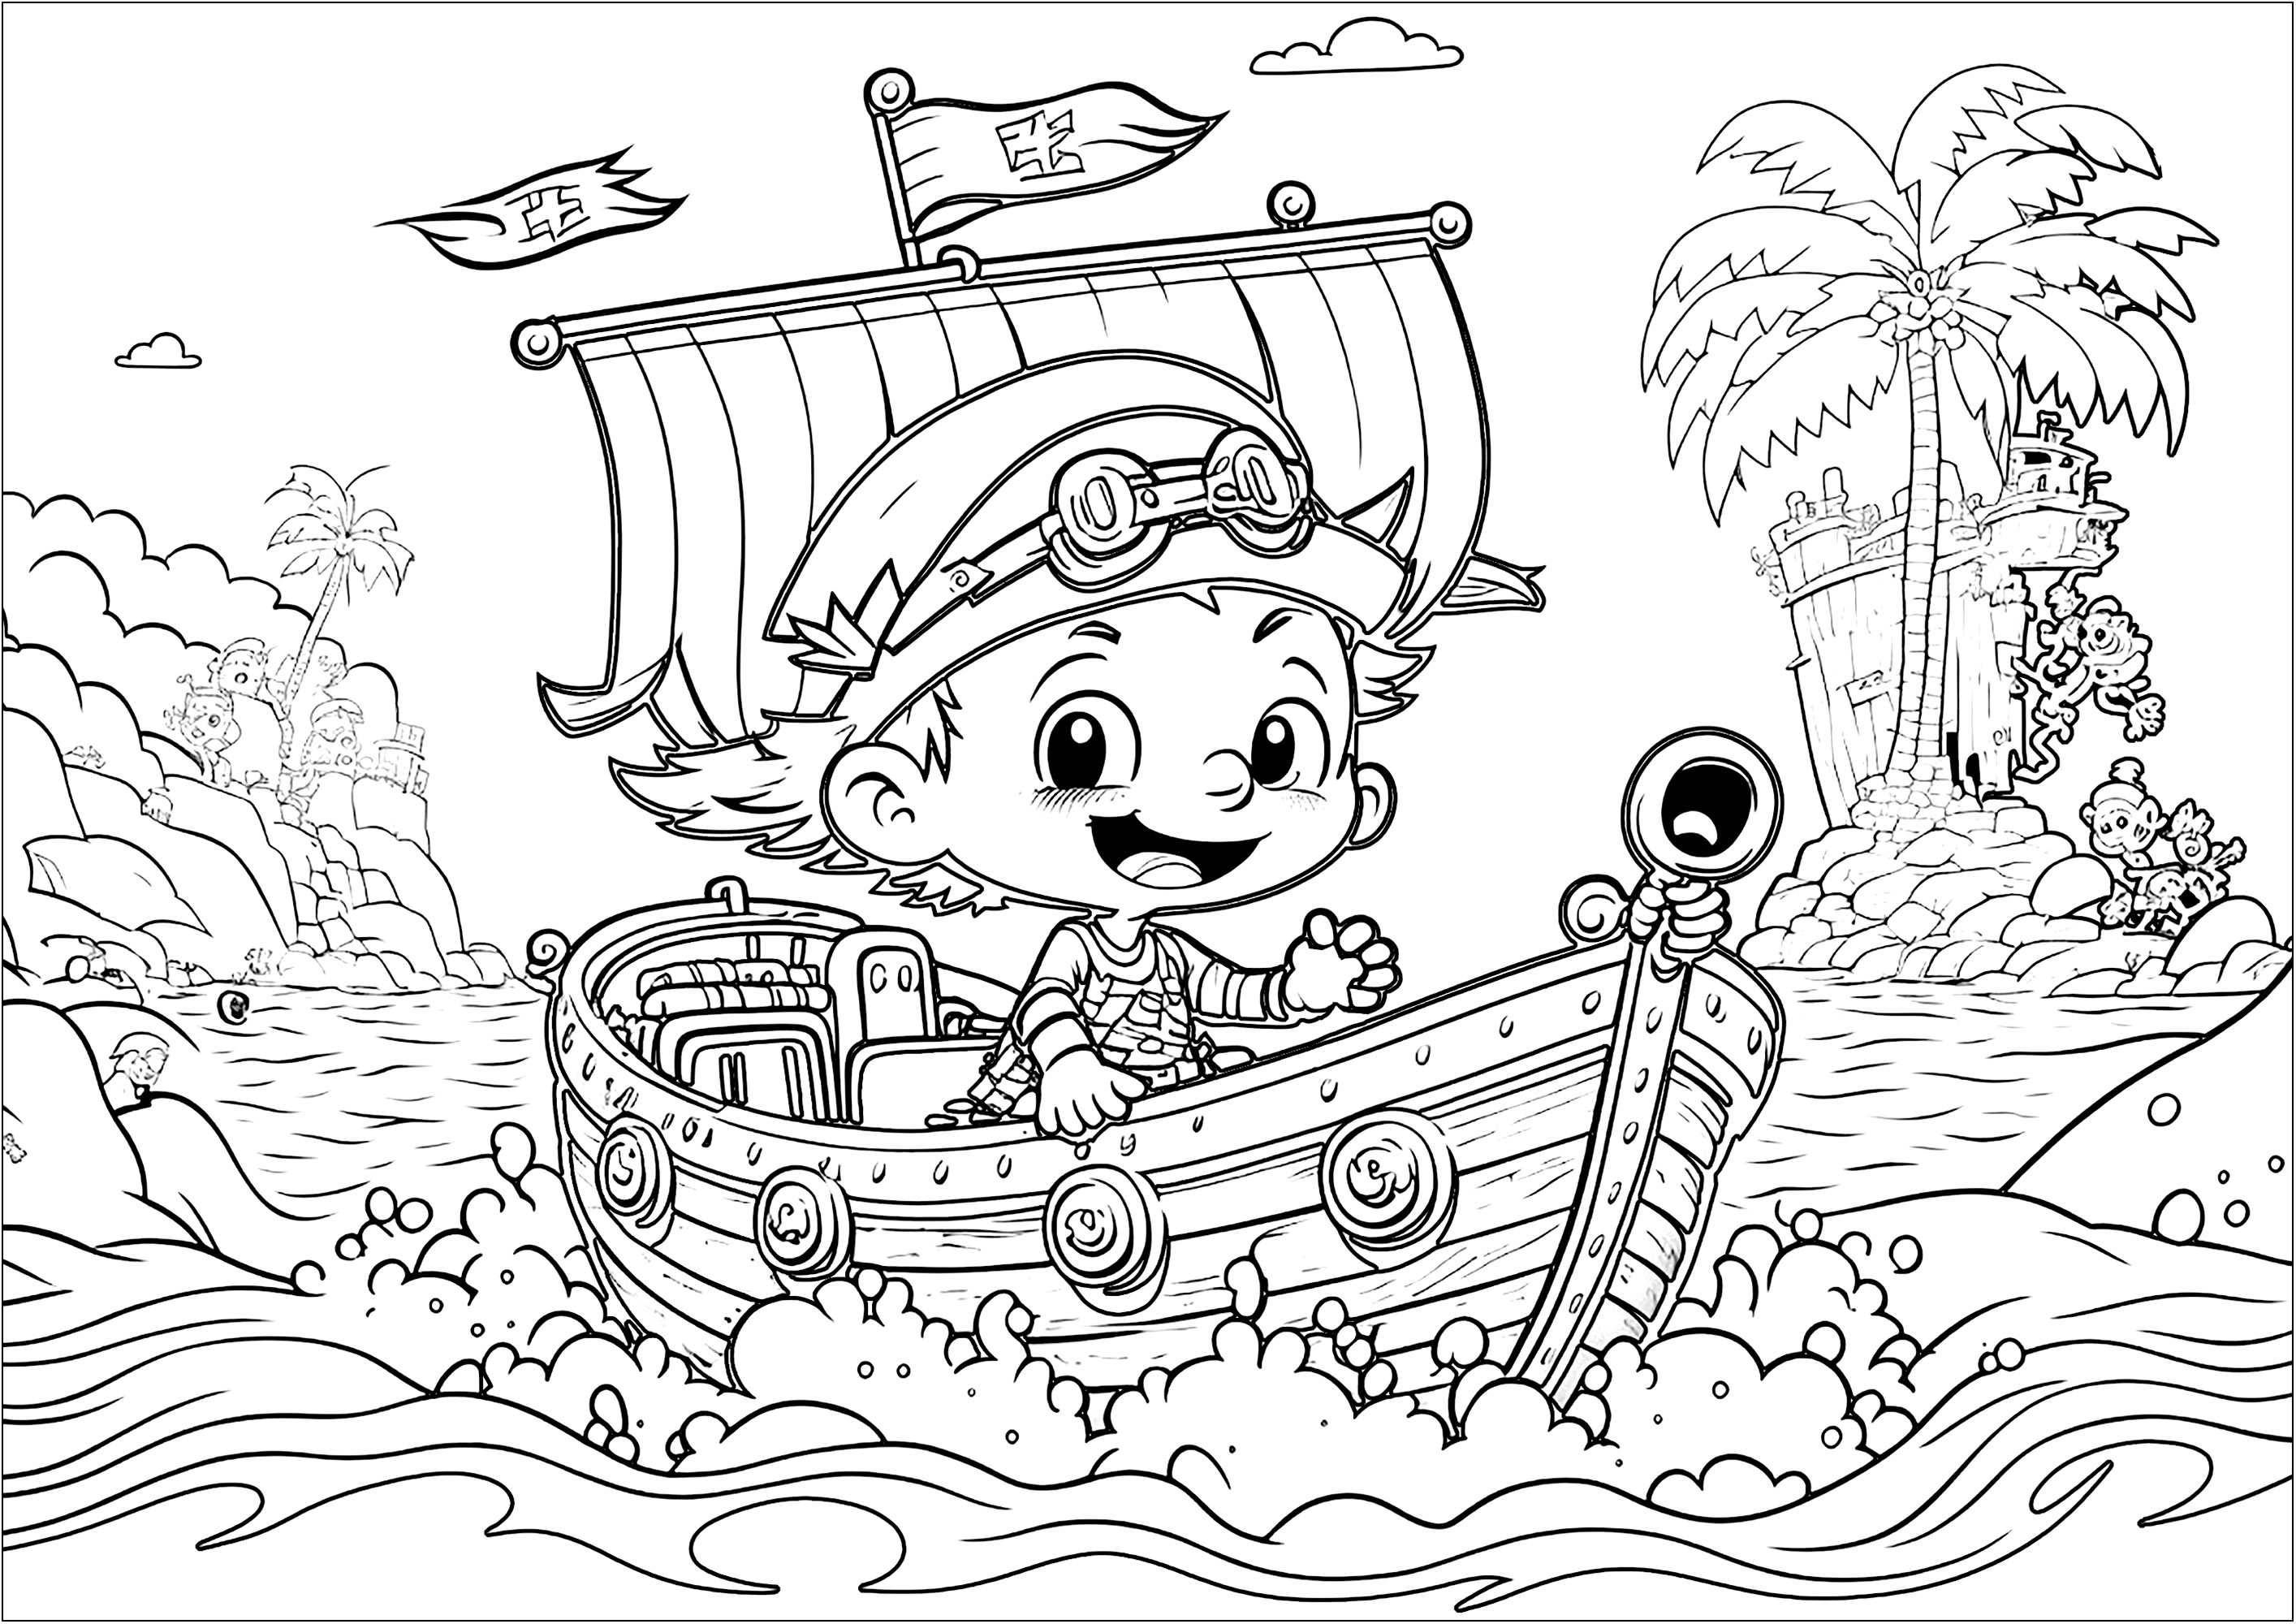 Um bom pirata para colorir, a caminho de novas aventuras no seu belo navio. O estilo deste livro de colorir é semelhante ao dos caracteres Disney / Pixar.As crianças podem imaginar histórias e aventuras de Piratas enquanto colorem.